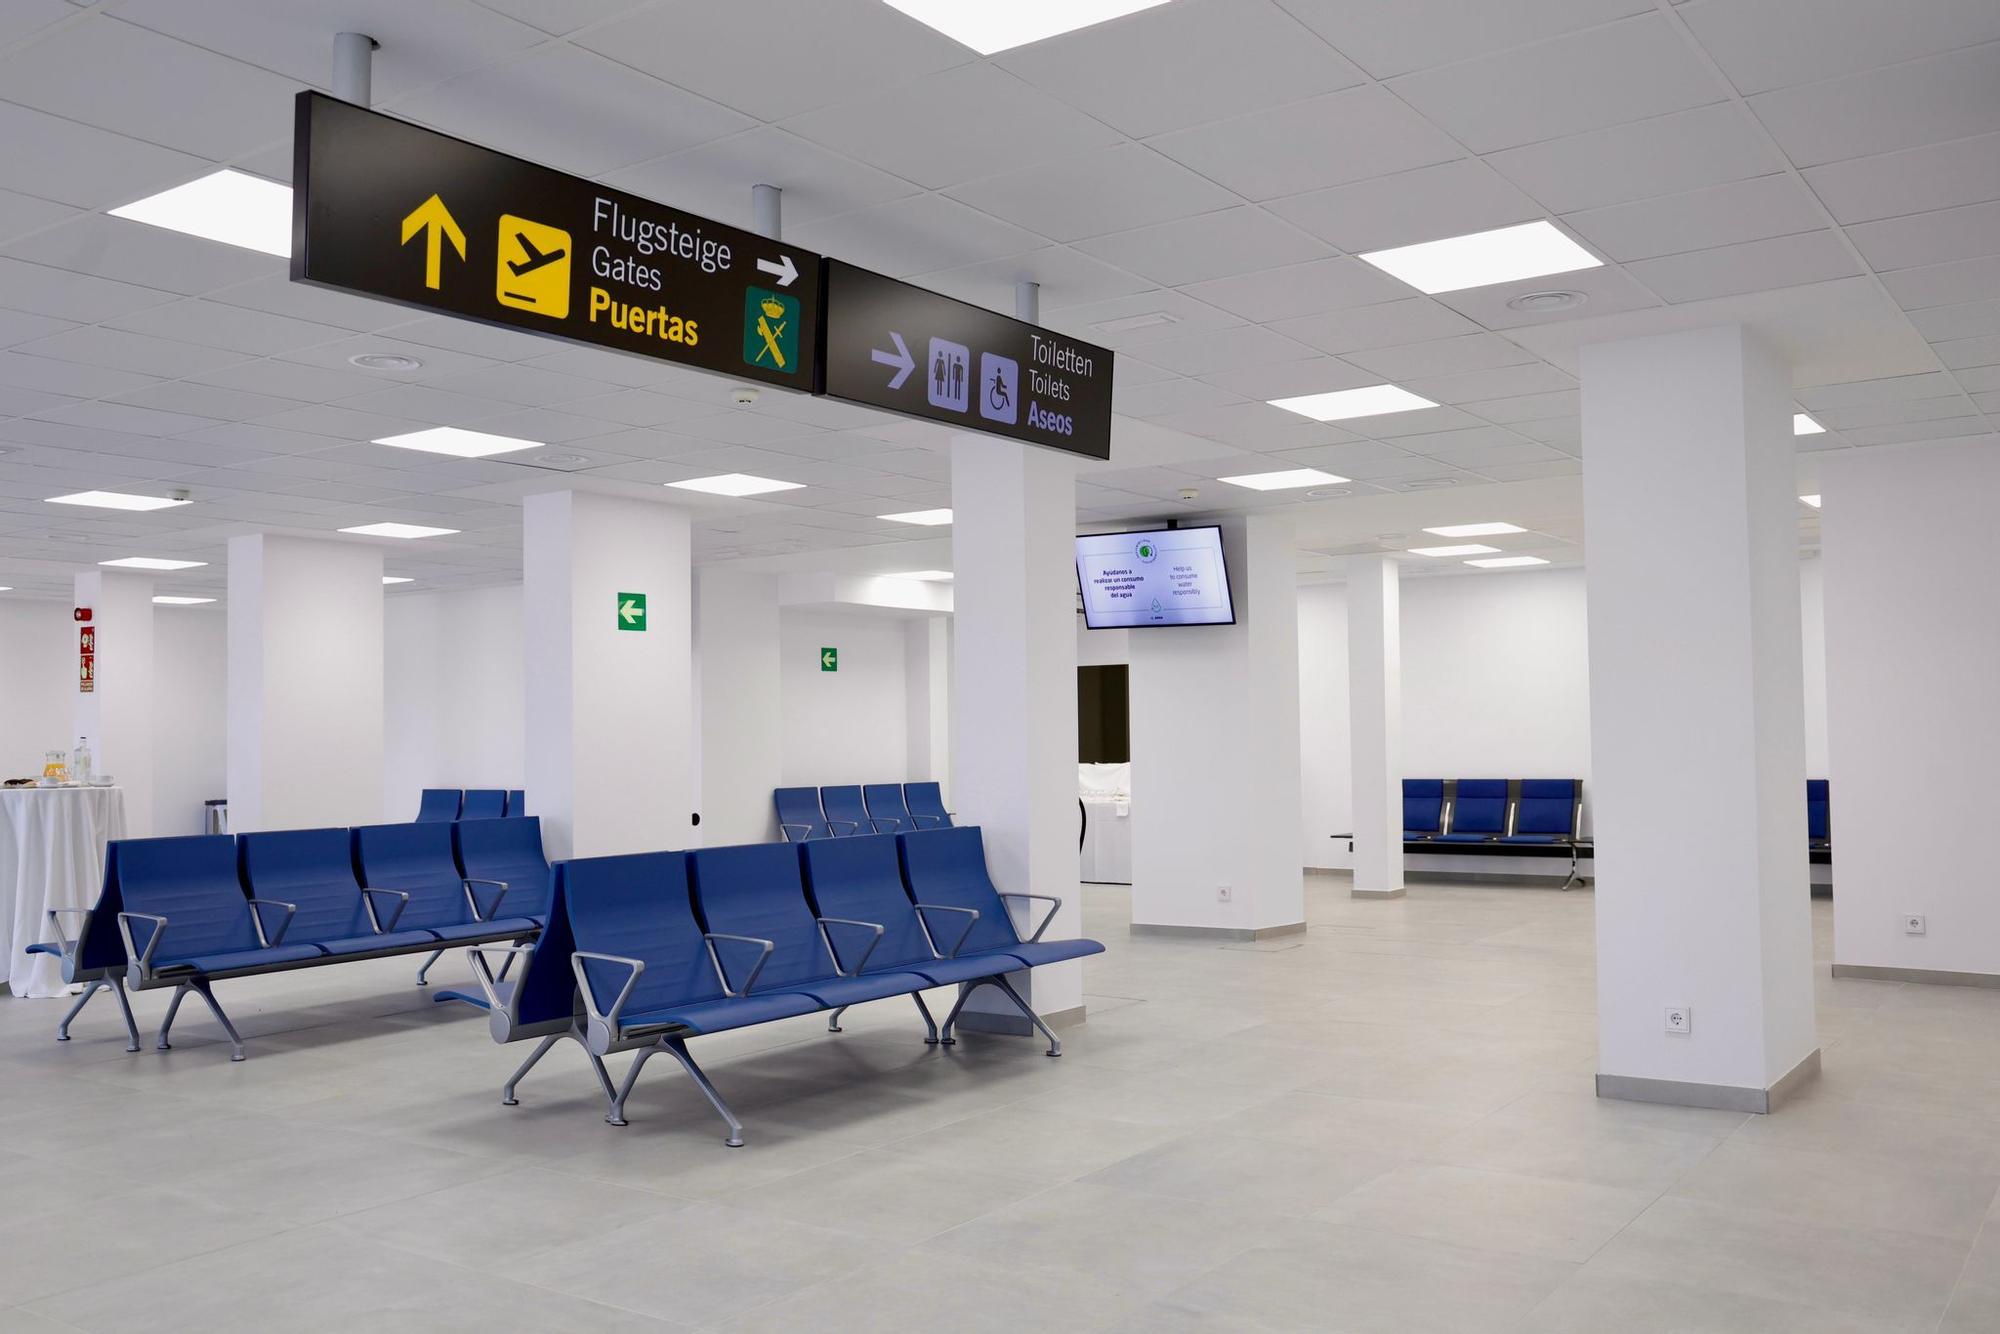 El aeropuerto de Córdoba estrena terminal